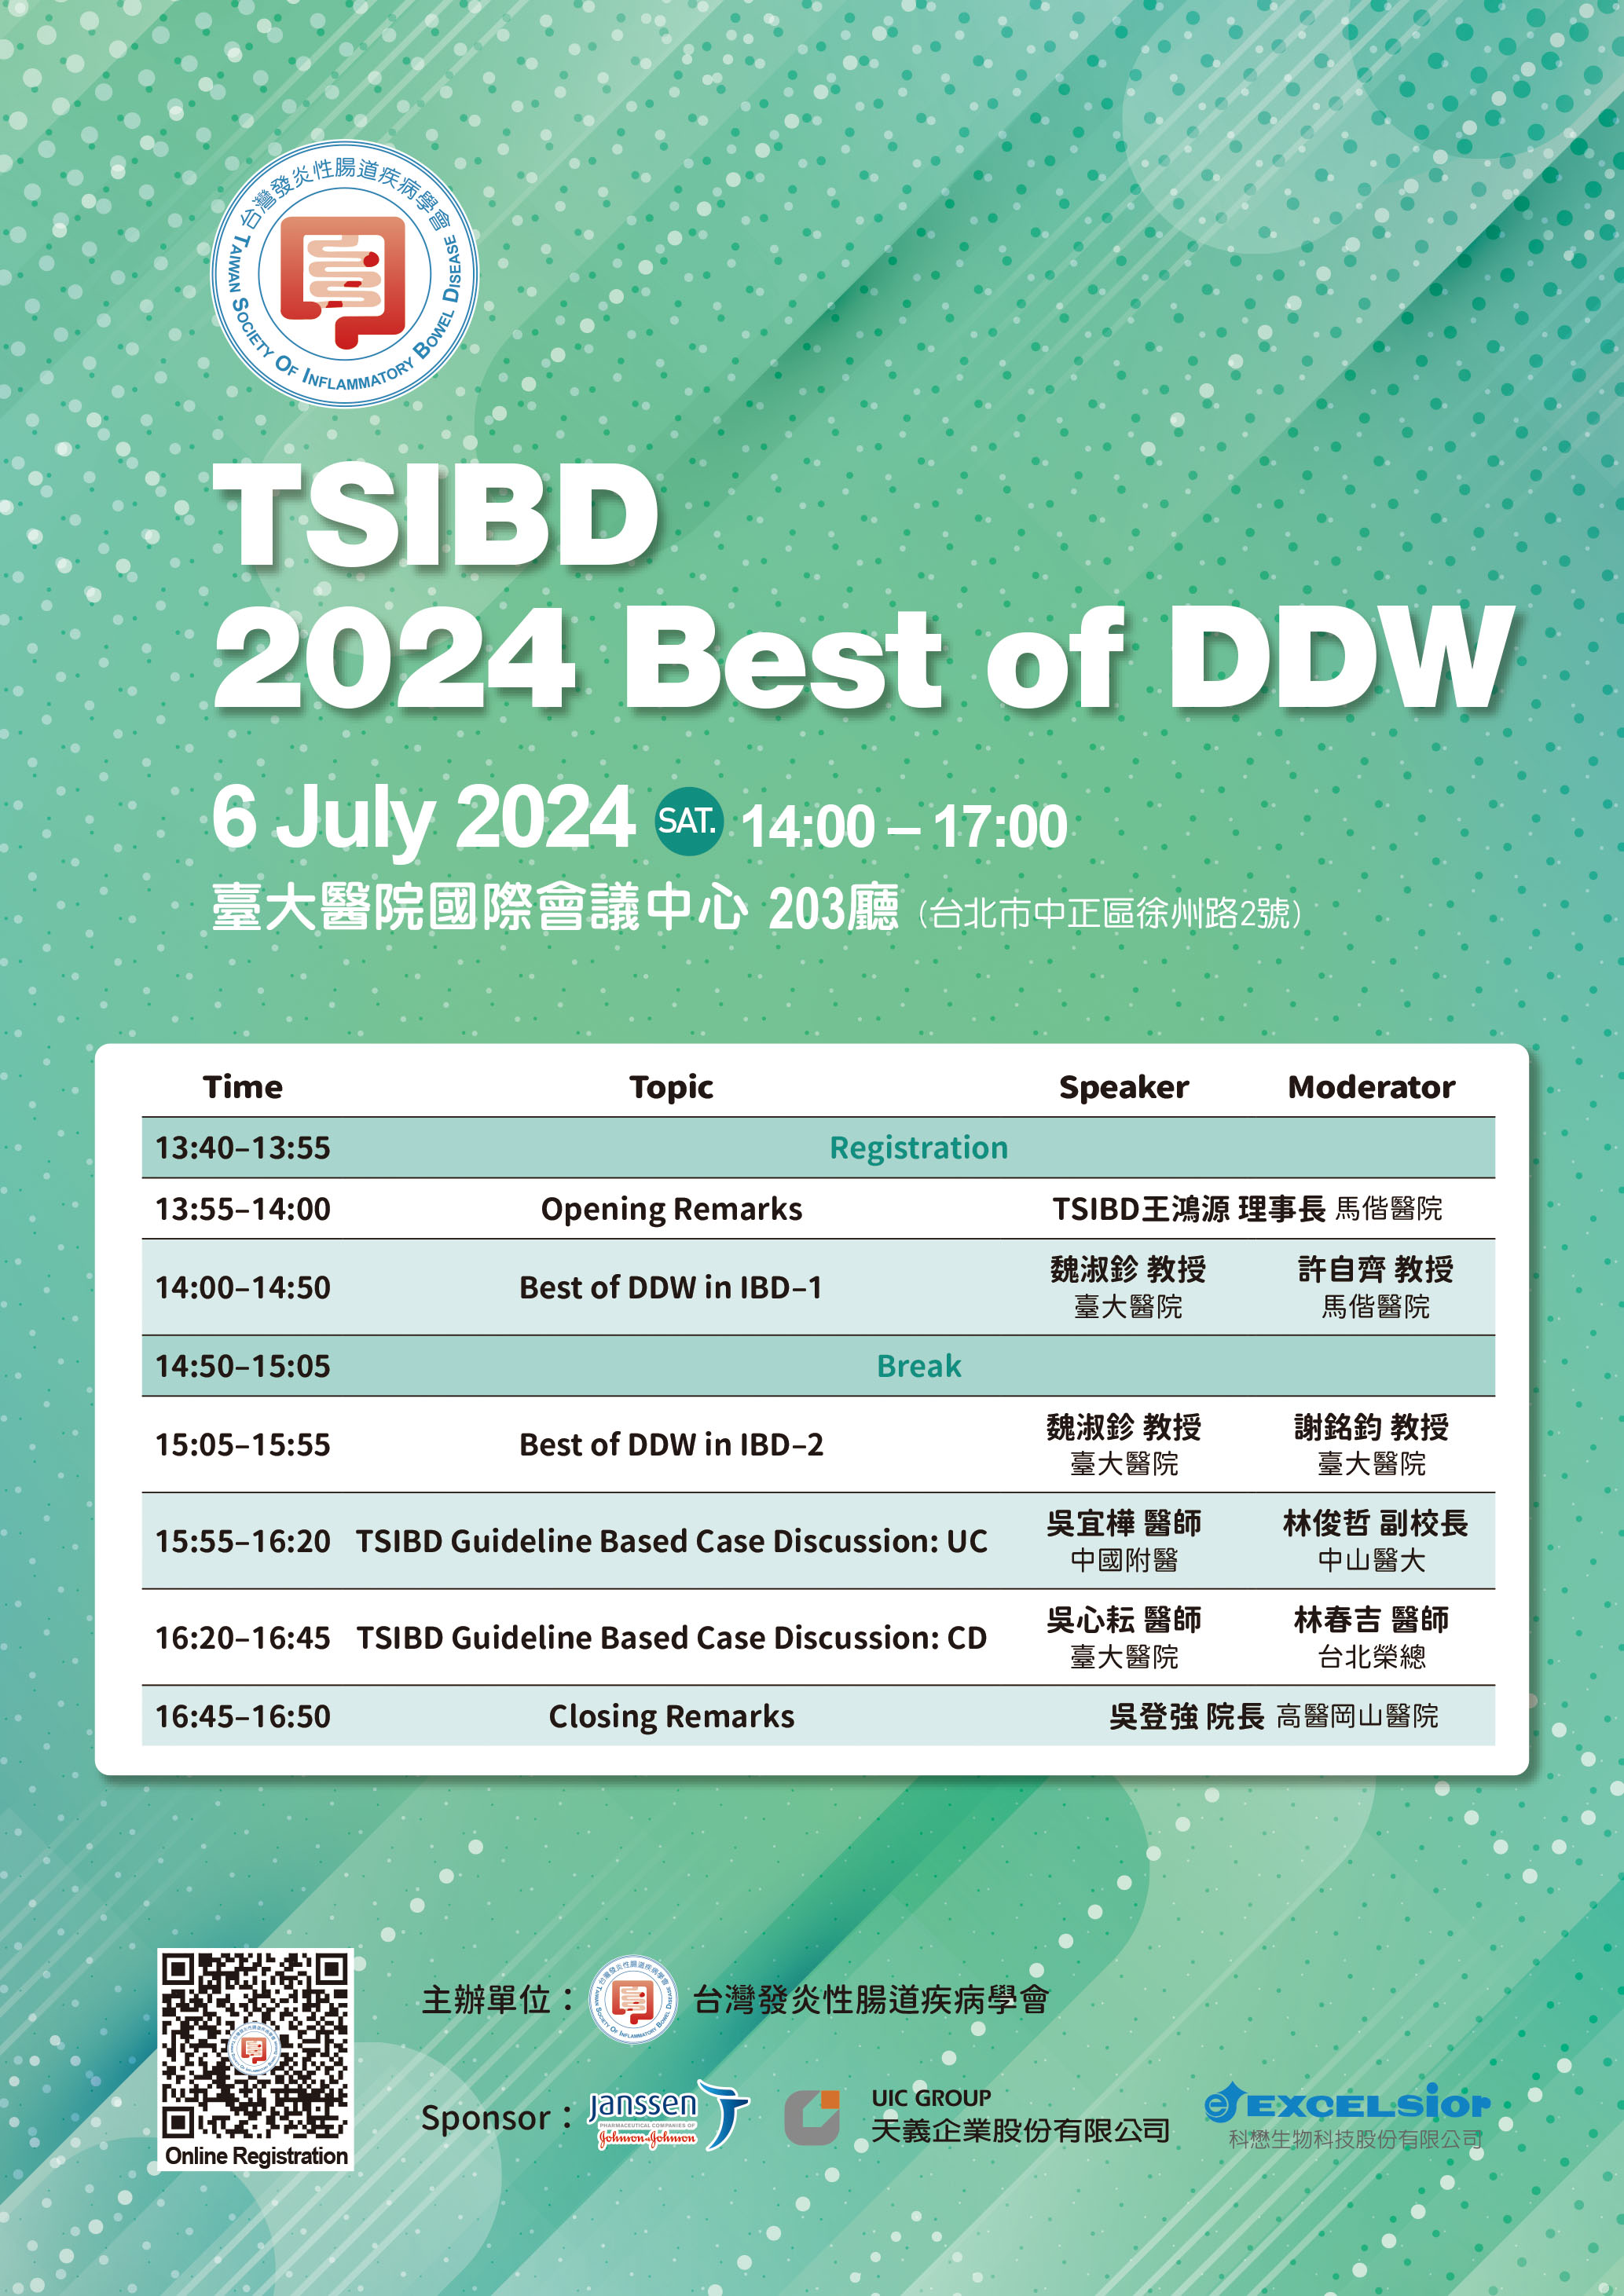 【活動】TSIBD 2024 Best of DDW (台北場)~活動結束